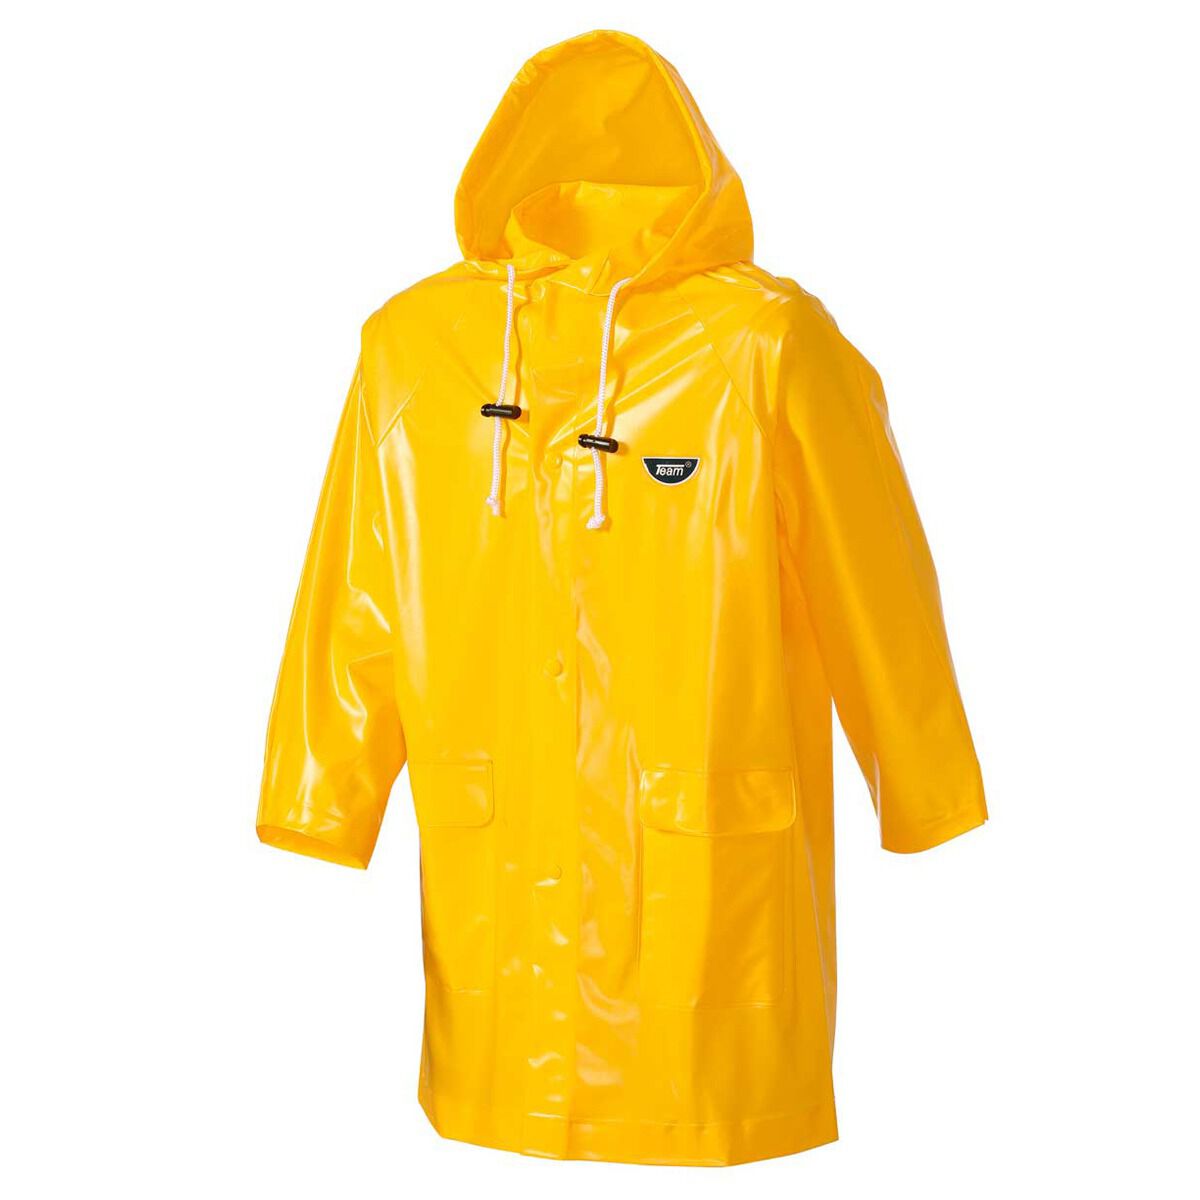 rebel sport raincoat